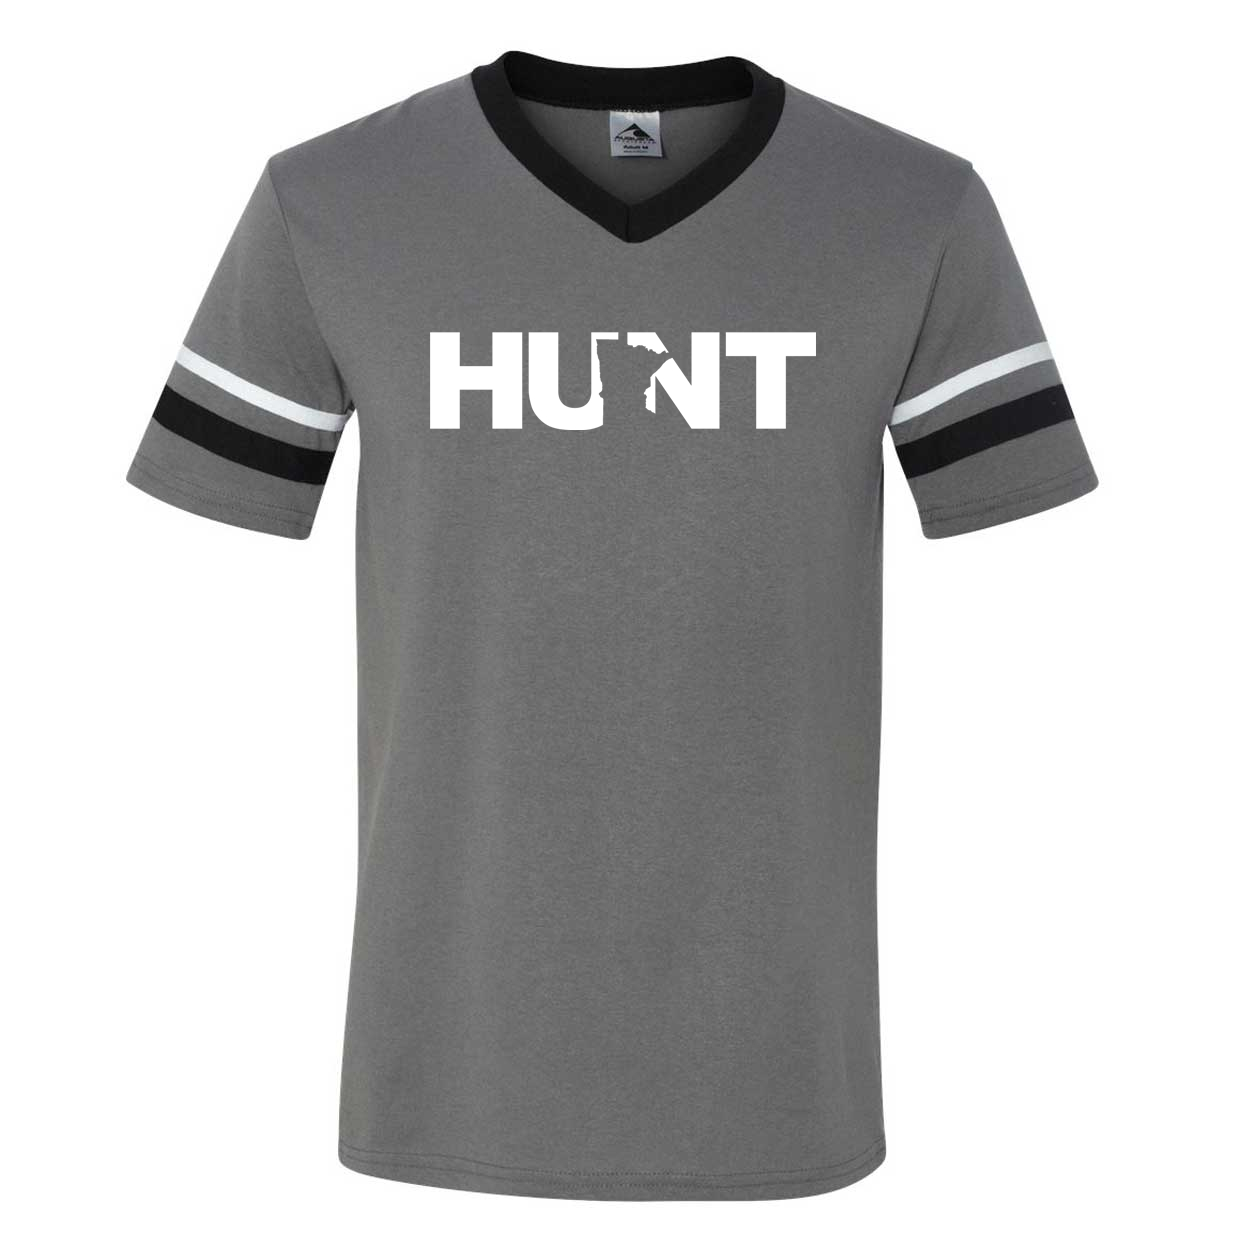 Hunt Minnesota Classic Premium Striped Jersey T-Shirt Graphite/Black/White (White Logo)